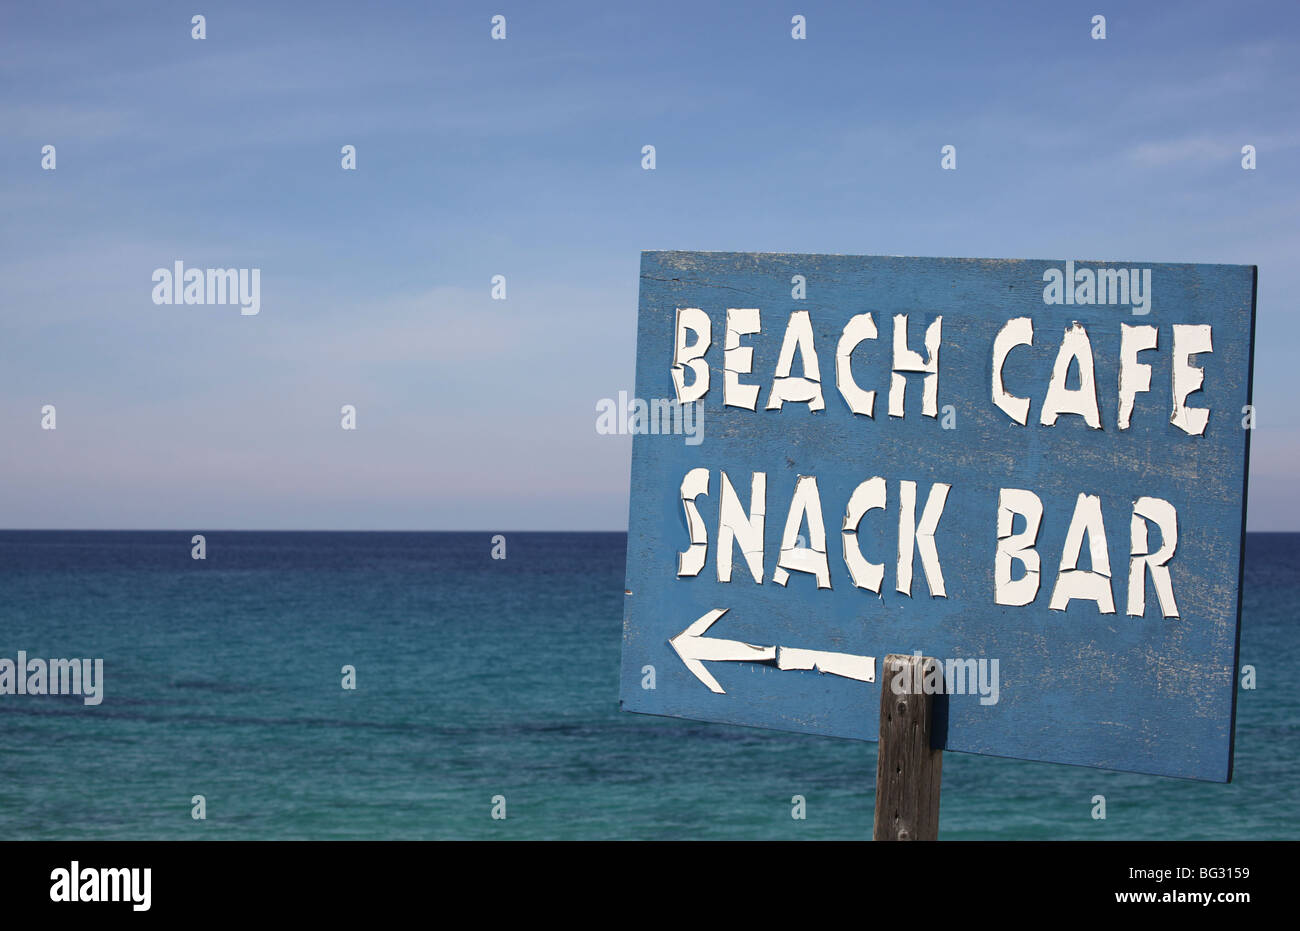 Tiempo signo maltratadas dirigir a las personas a una cafetería y snack bar en la playa junto al mar Foto de stock